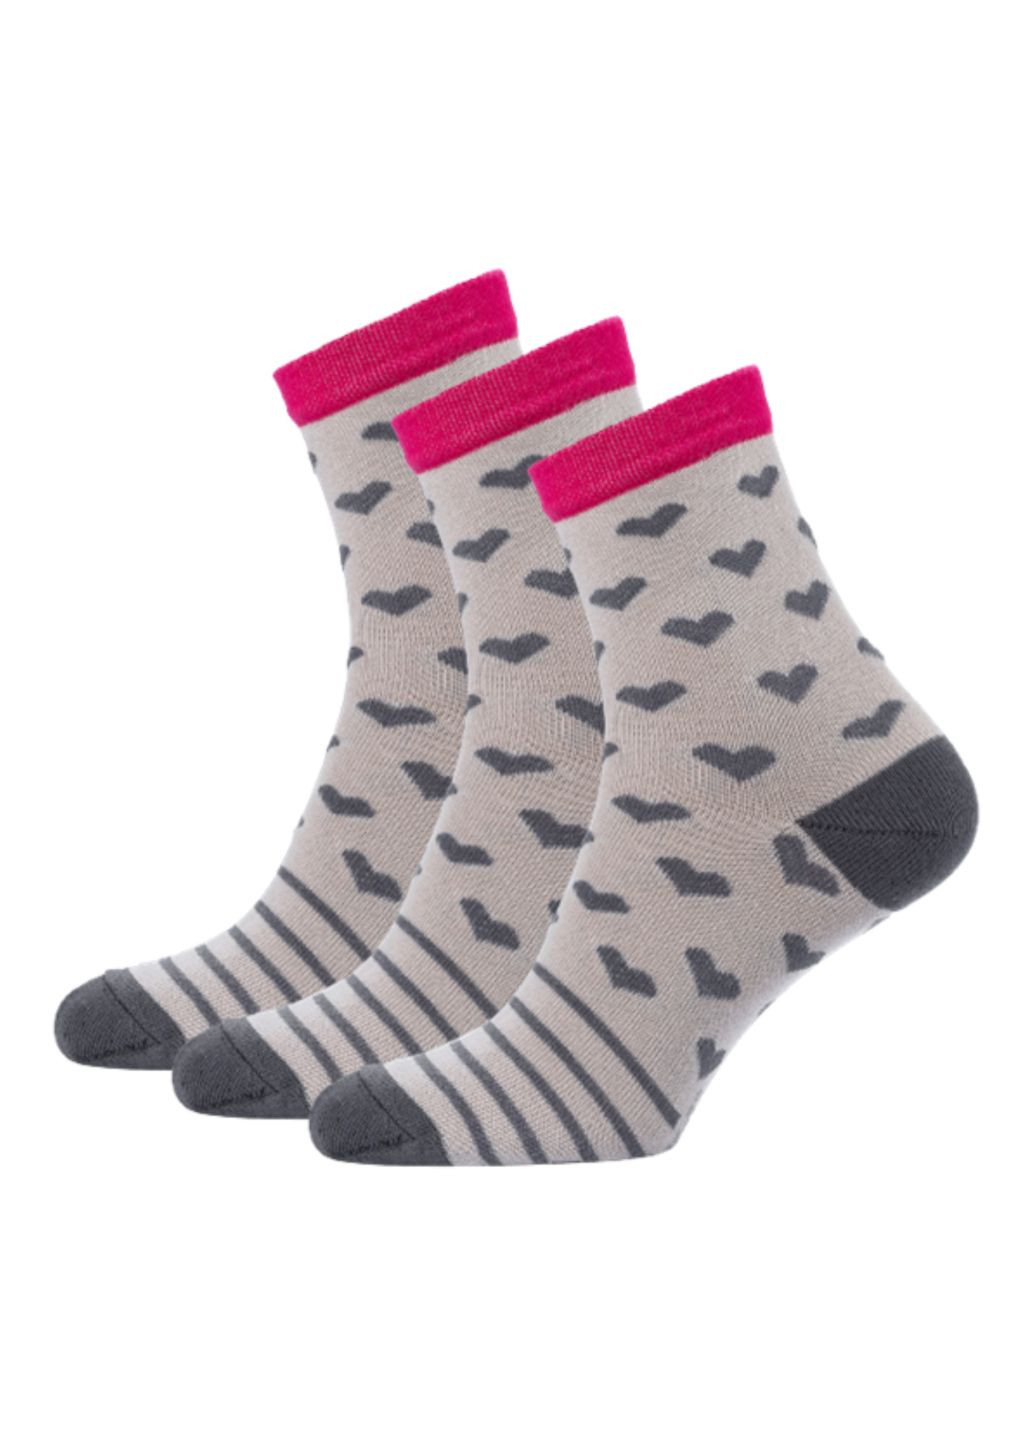 RFT Шкарпетки жіночі високі. Набір (3 шт.) Siela rt1312-070_набори (260063115)